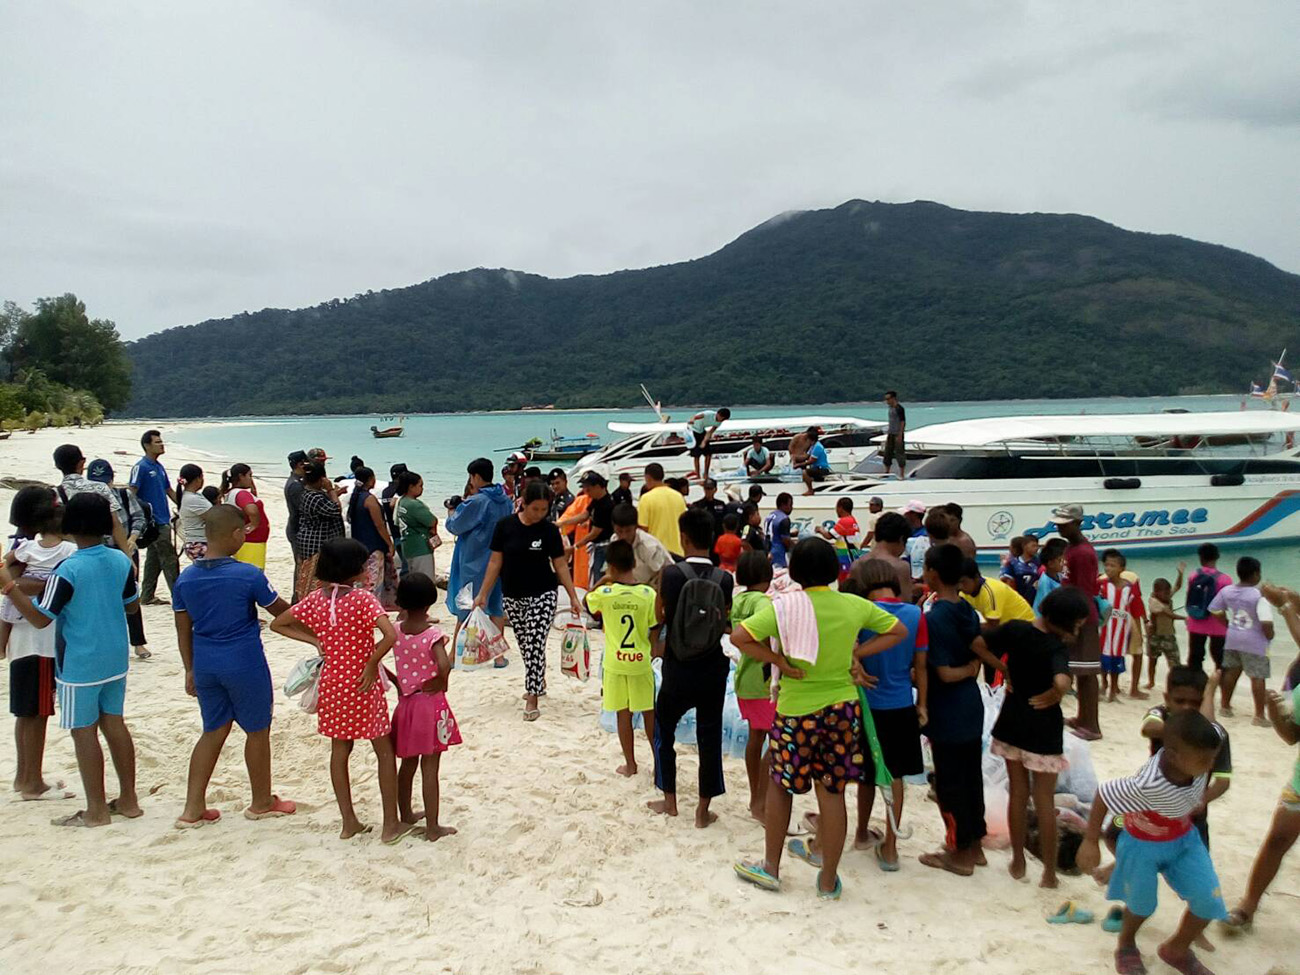 В понедельник 14 августа на Ко Липе прибыла гуманитарная помощь для жителей острова, пострадавших от наводнения